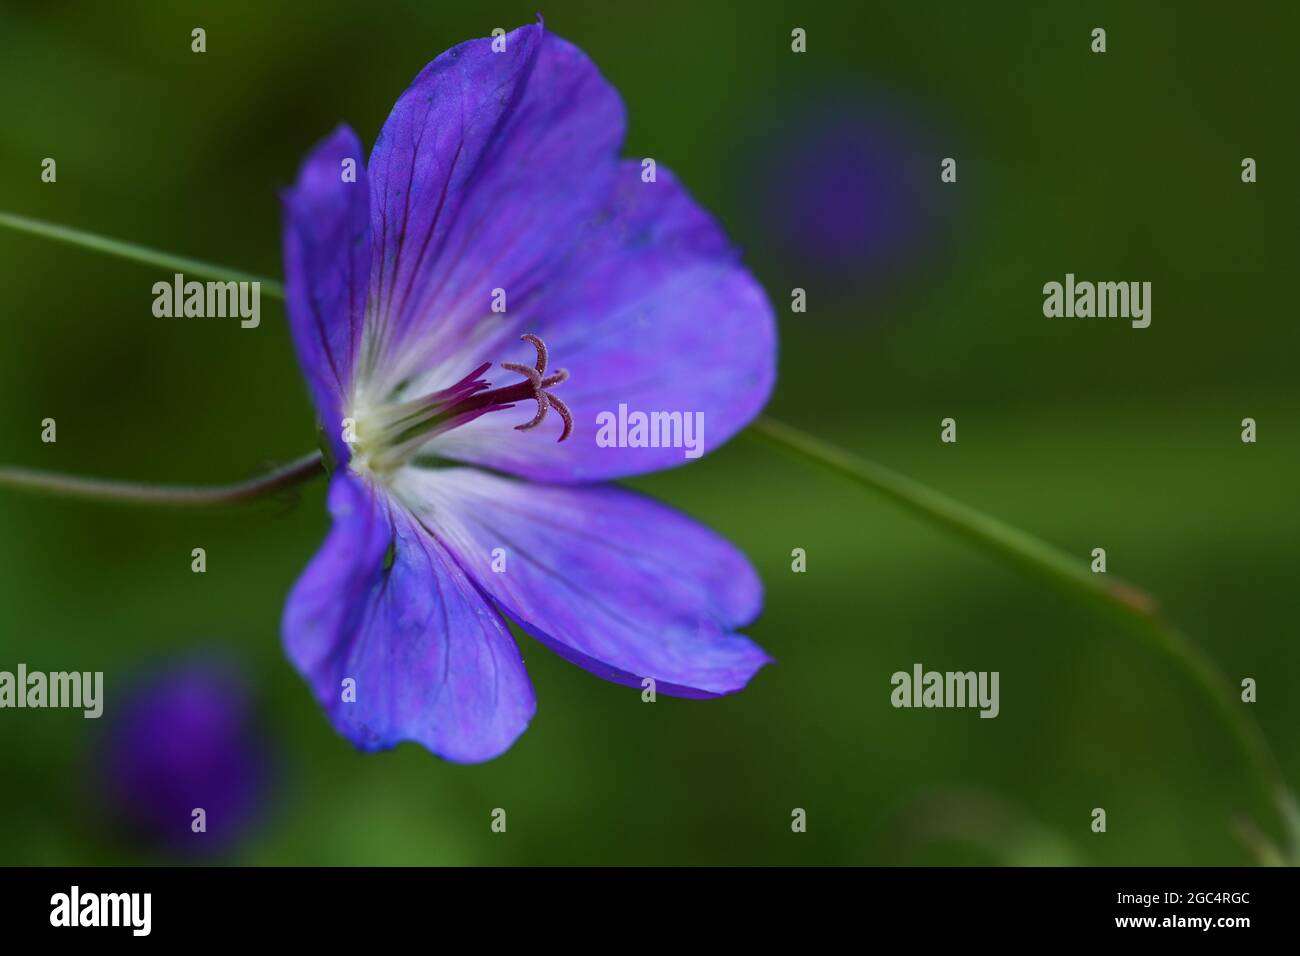 Fleur de géranium, forme cultivée avec des pétales bleu lilas, macro-prise avec foyer sur le pistil et le pollen, fond vert foncé avec espace de copie, sélecte Banque D'Images